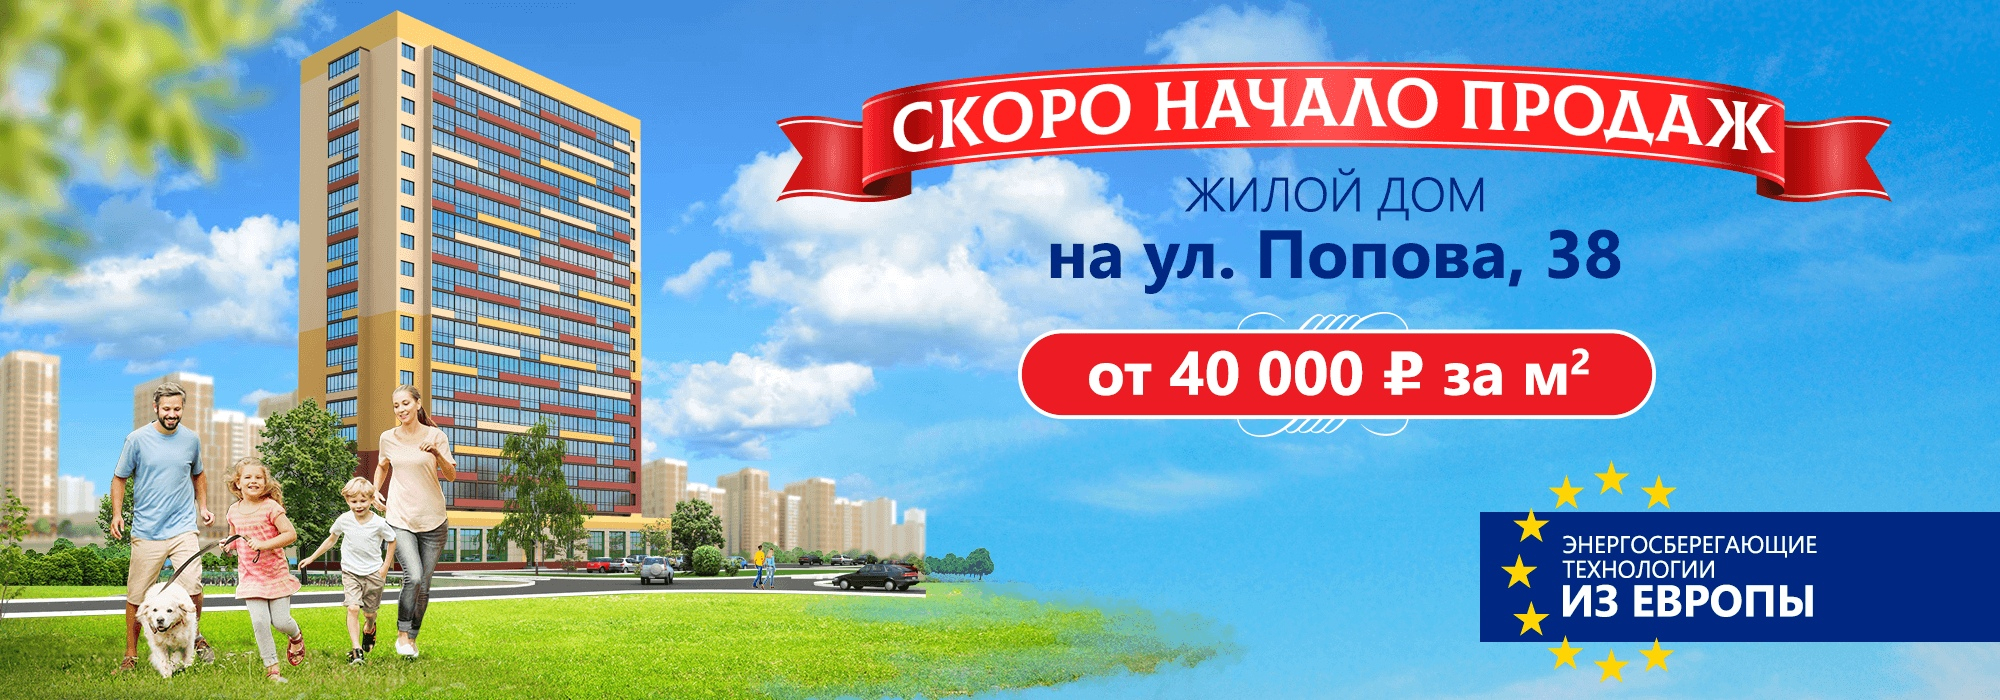 До старта продаж квартир в доме на Попова, 38 остались считанные дни!